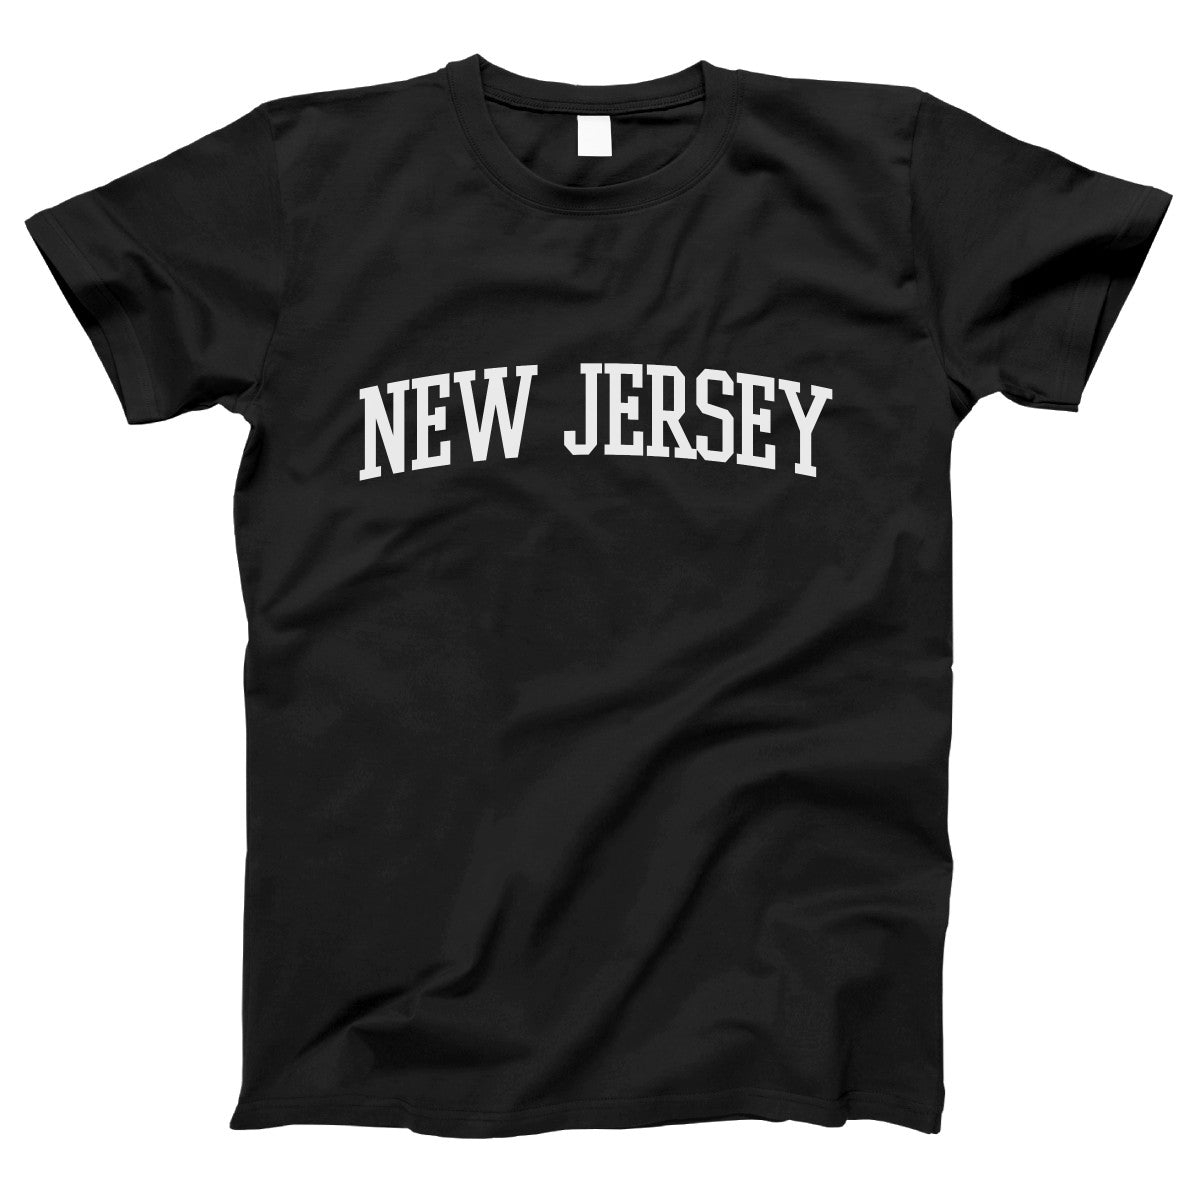 New Jersey Women's T-shirt